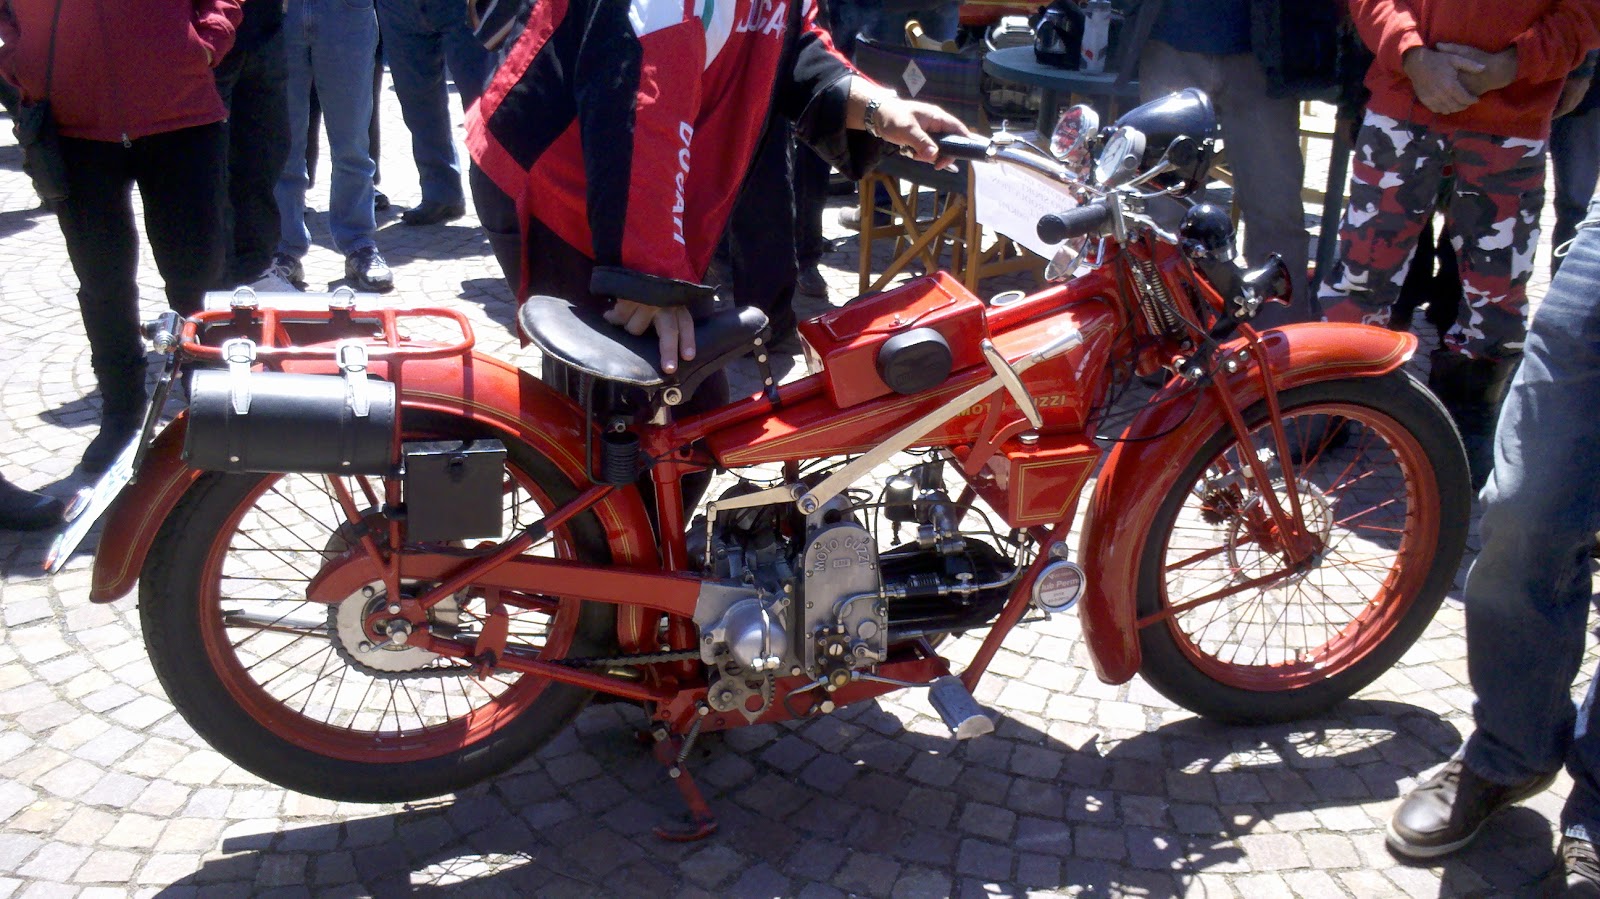 MOTONERO: Guzzi's - Ducati's - Moto Morini's......